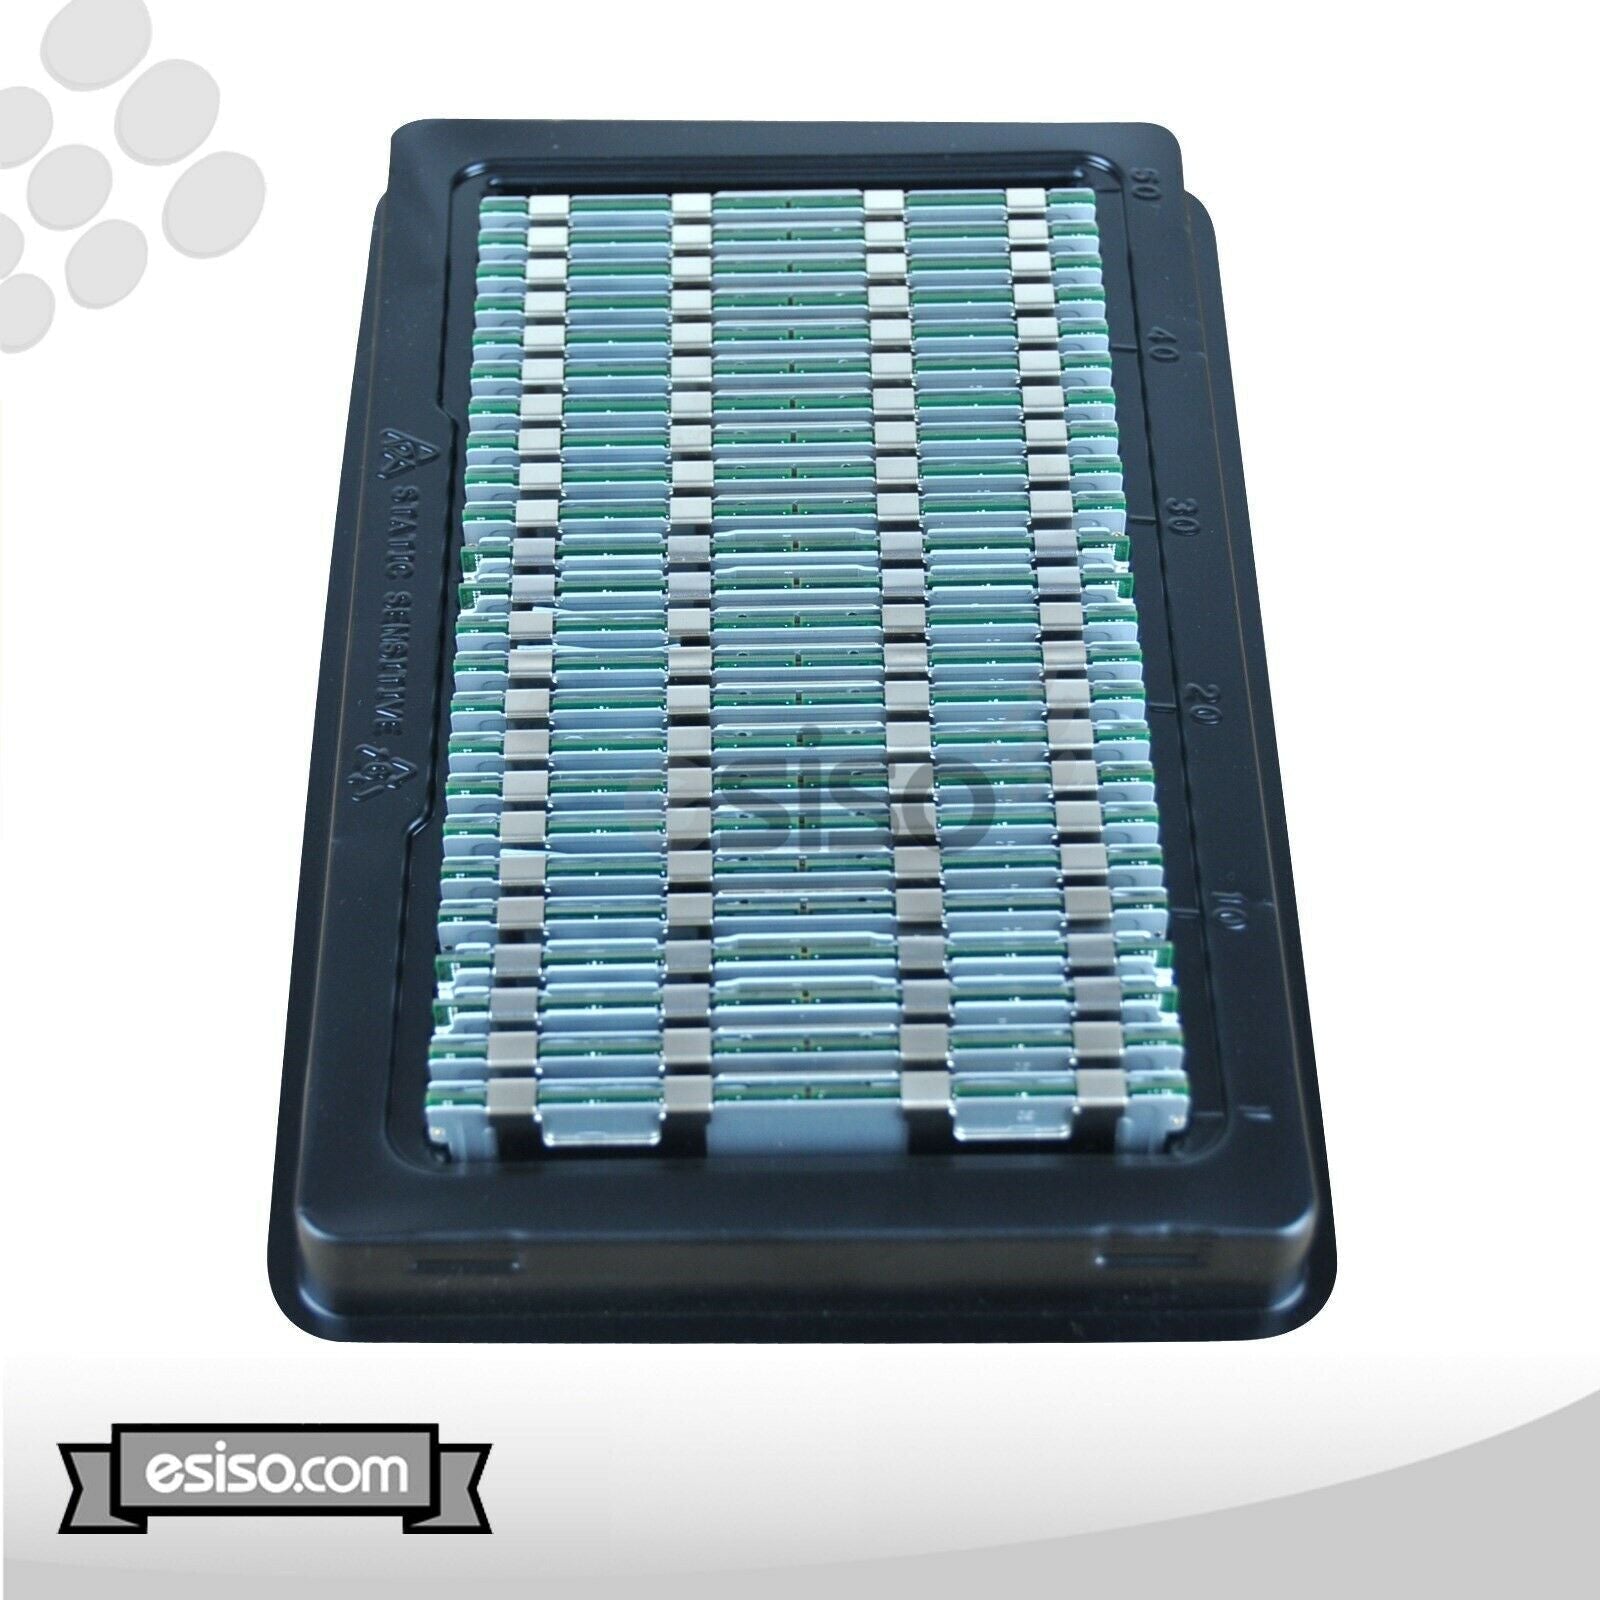 224GB (14x 16GB) 10600R RAM MEMORY MODULE FOR HP DL180 DL360 DL380 DL580 G6 G7